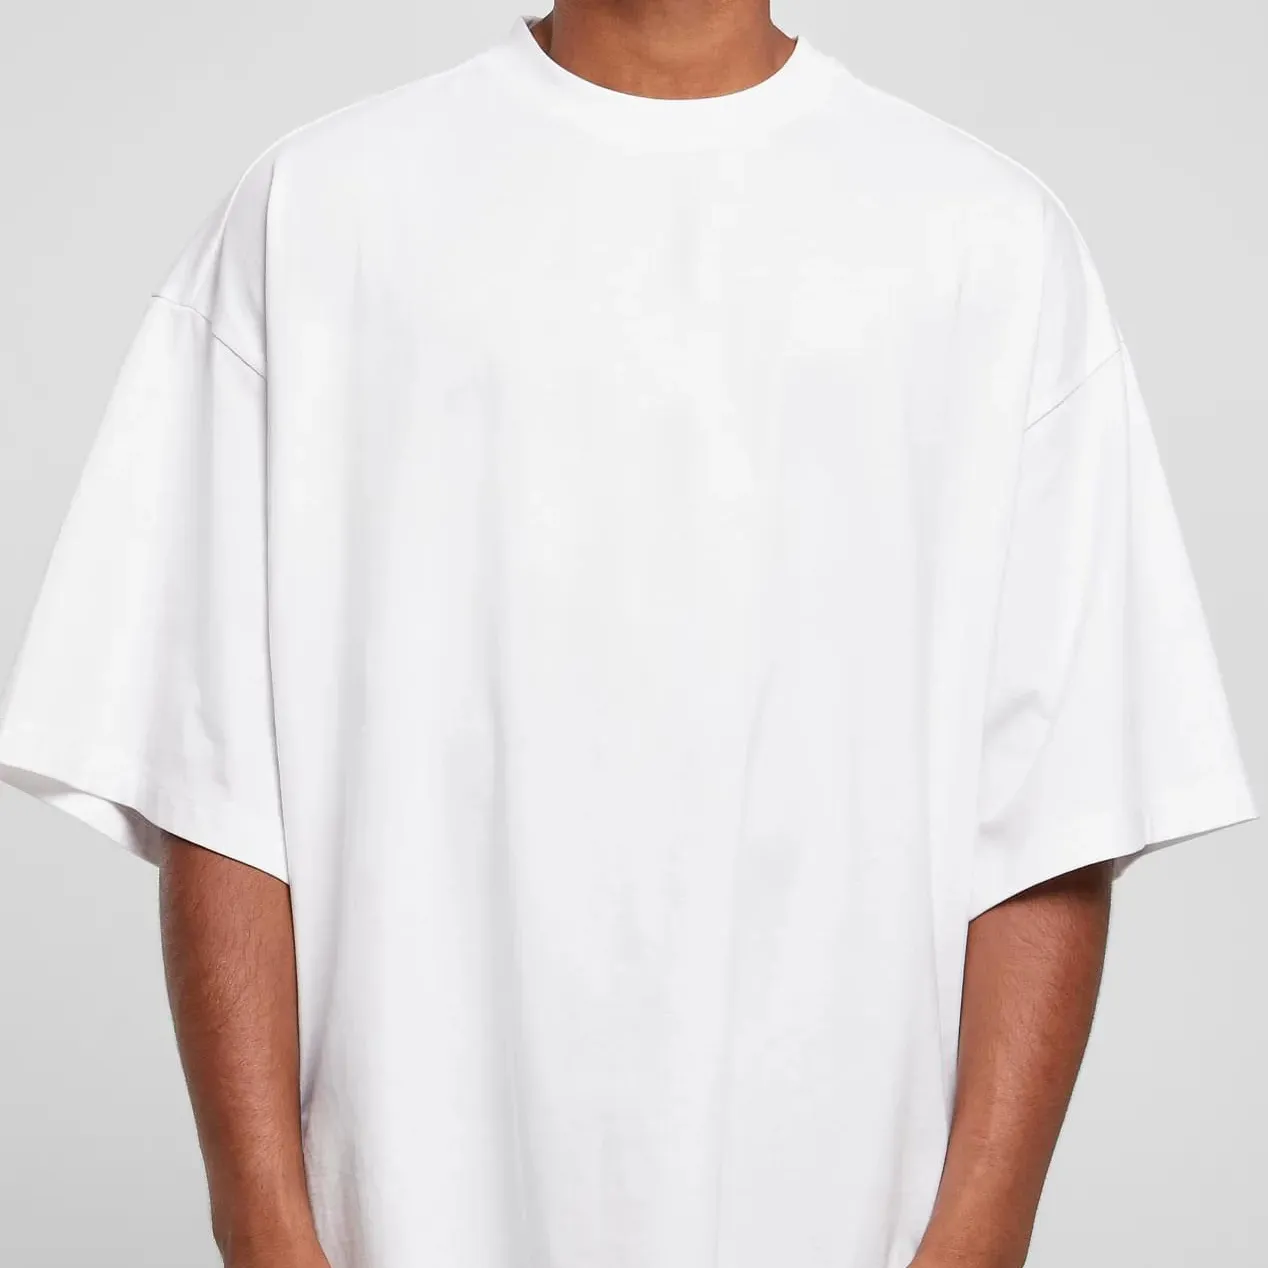 Herstellung Herren Shirt hochwertige Streetwear Blank g/m² schweres Print Logo T-Shirt OEM hergestellt in Italien